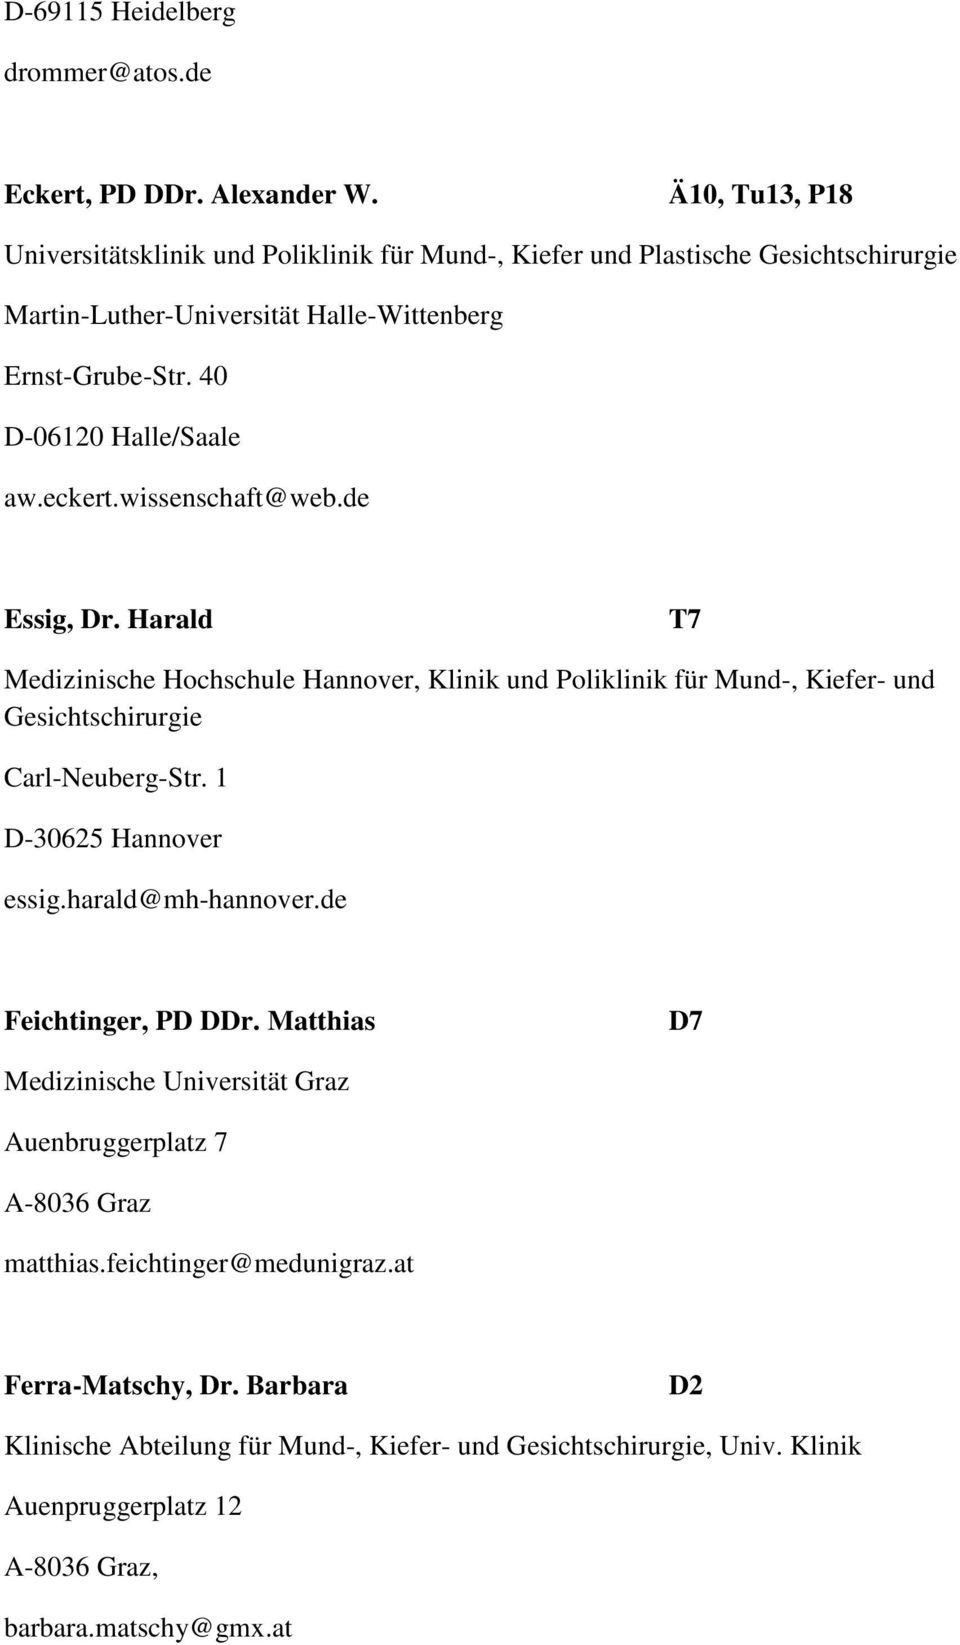 eckert.wissenschaft@web.de Essig, Dr. Harald T7 Medizinische Hochschule Hannover, Klinik und Poliklinik für Mund-, Kiefer- und Gesichtschirurgie Carl-Neuberg-Str. 1 D-30625 Hannover essig.